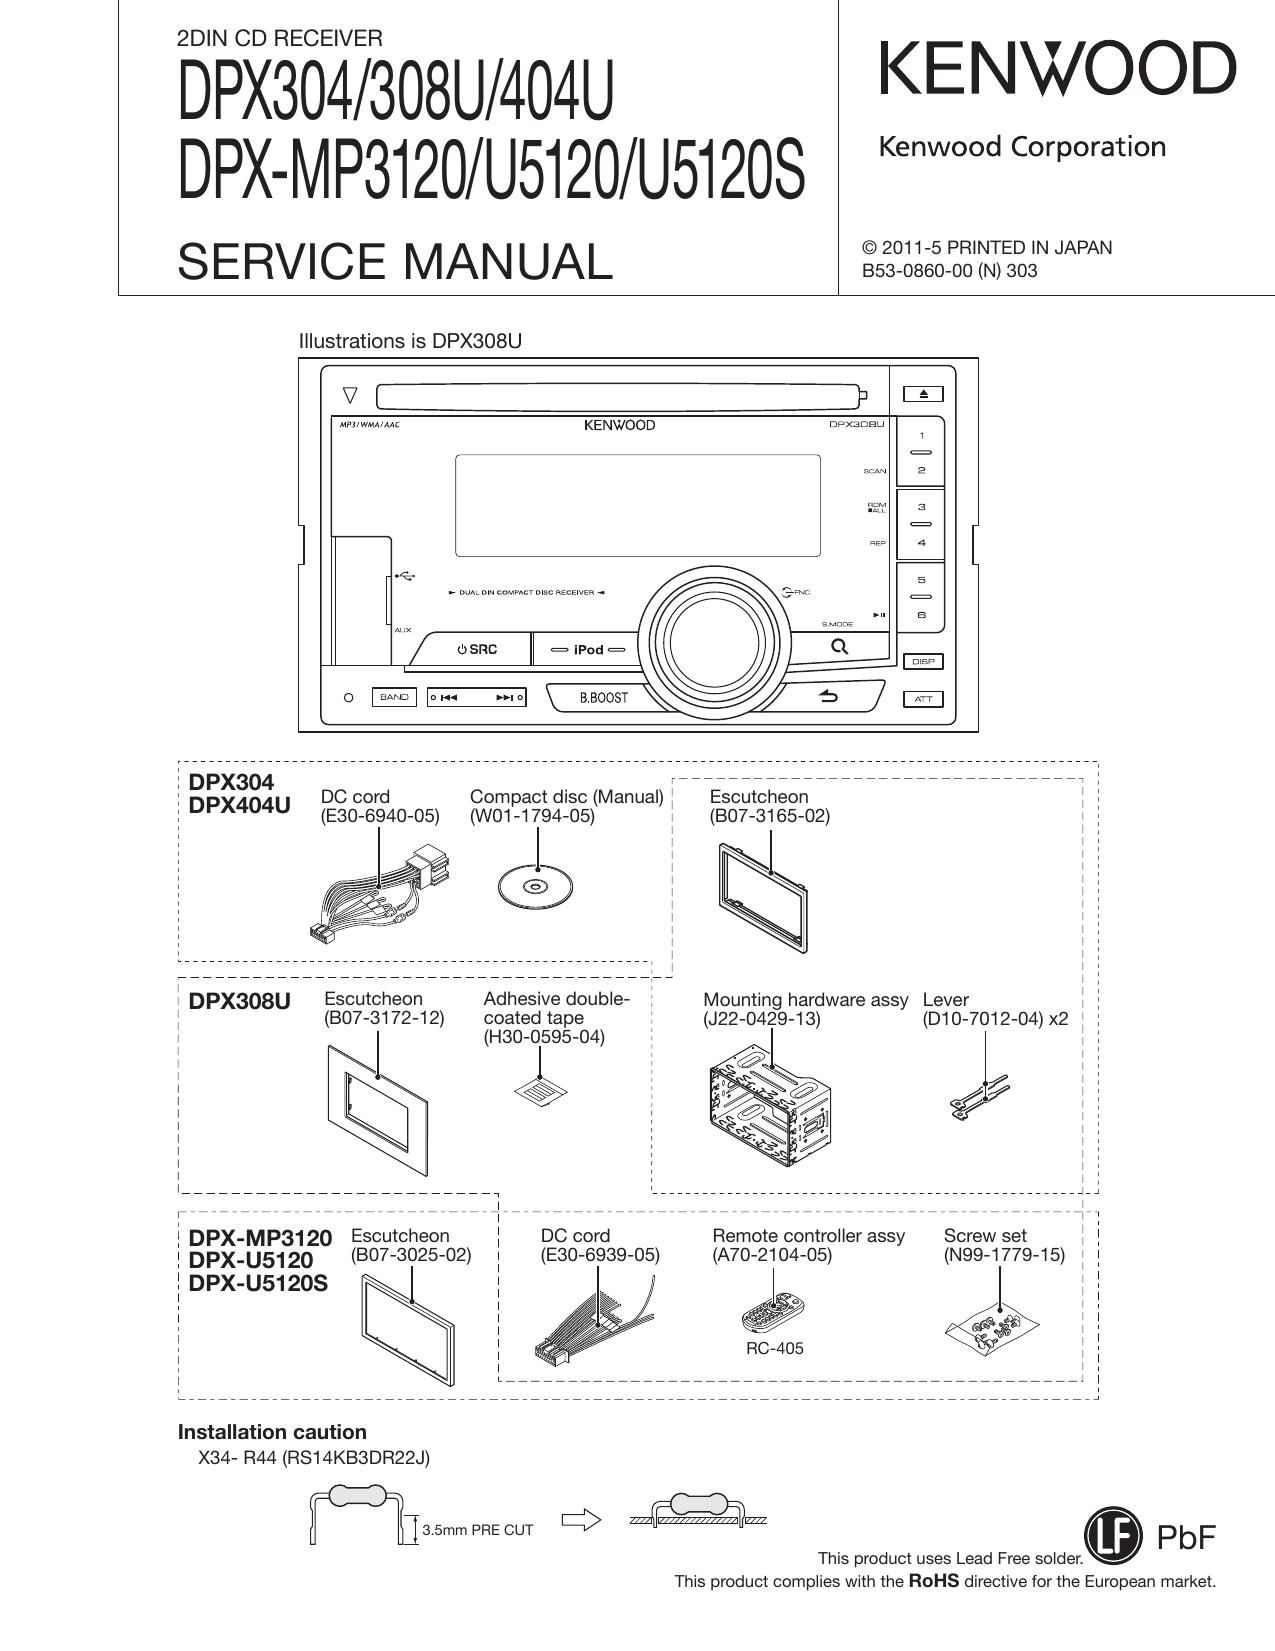 Kenwood DPXU 5120 S Service Manual